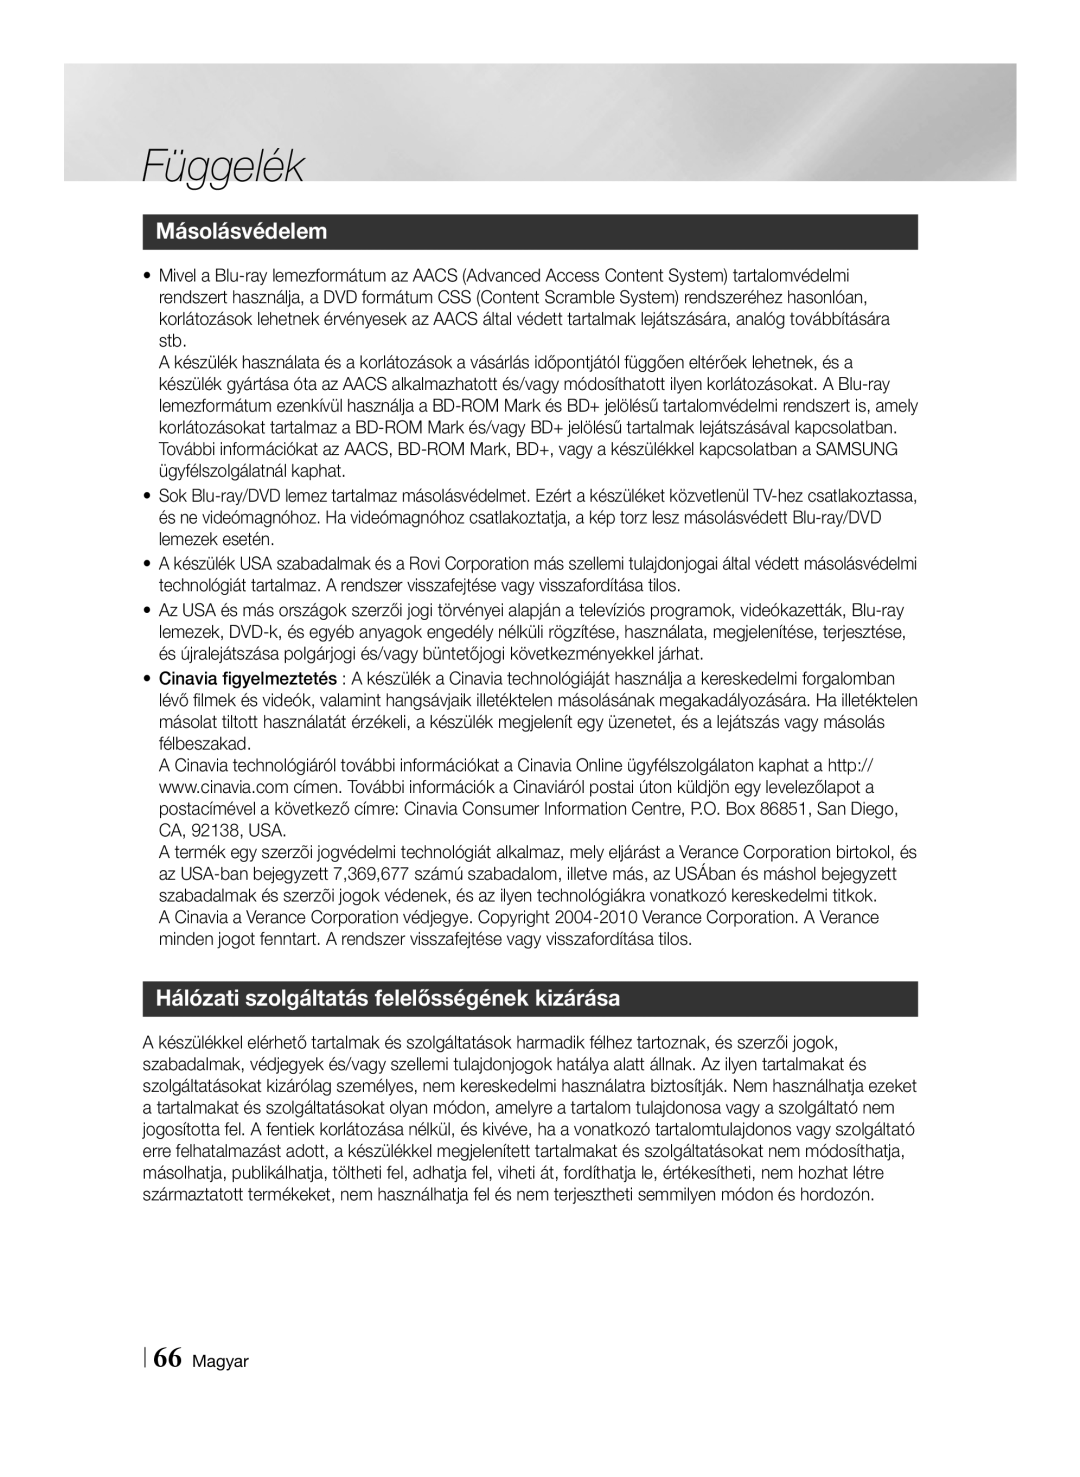 Samsung BD-E8900/EN, BD-E8500/EN manual Másolásvédelem, Hálózati szolgáltatás felelősségének kizárása, Függelék, Magyar 